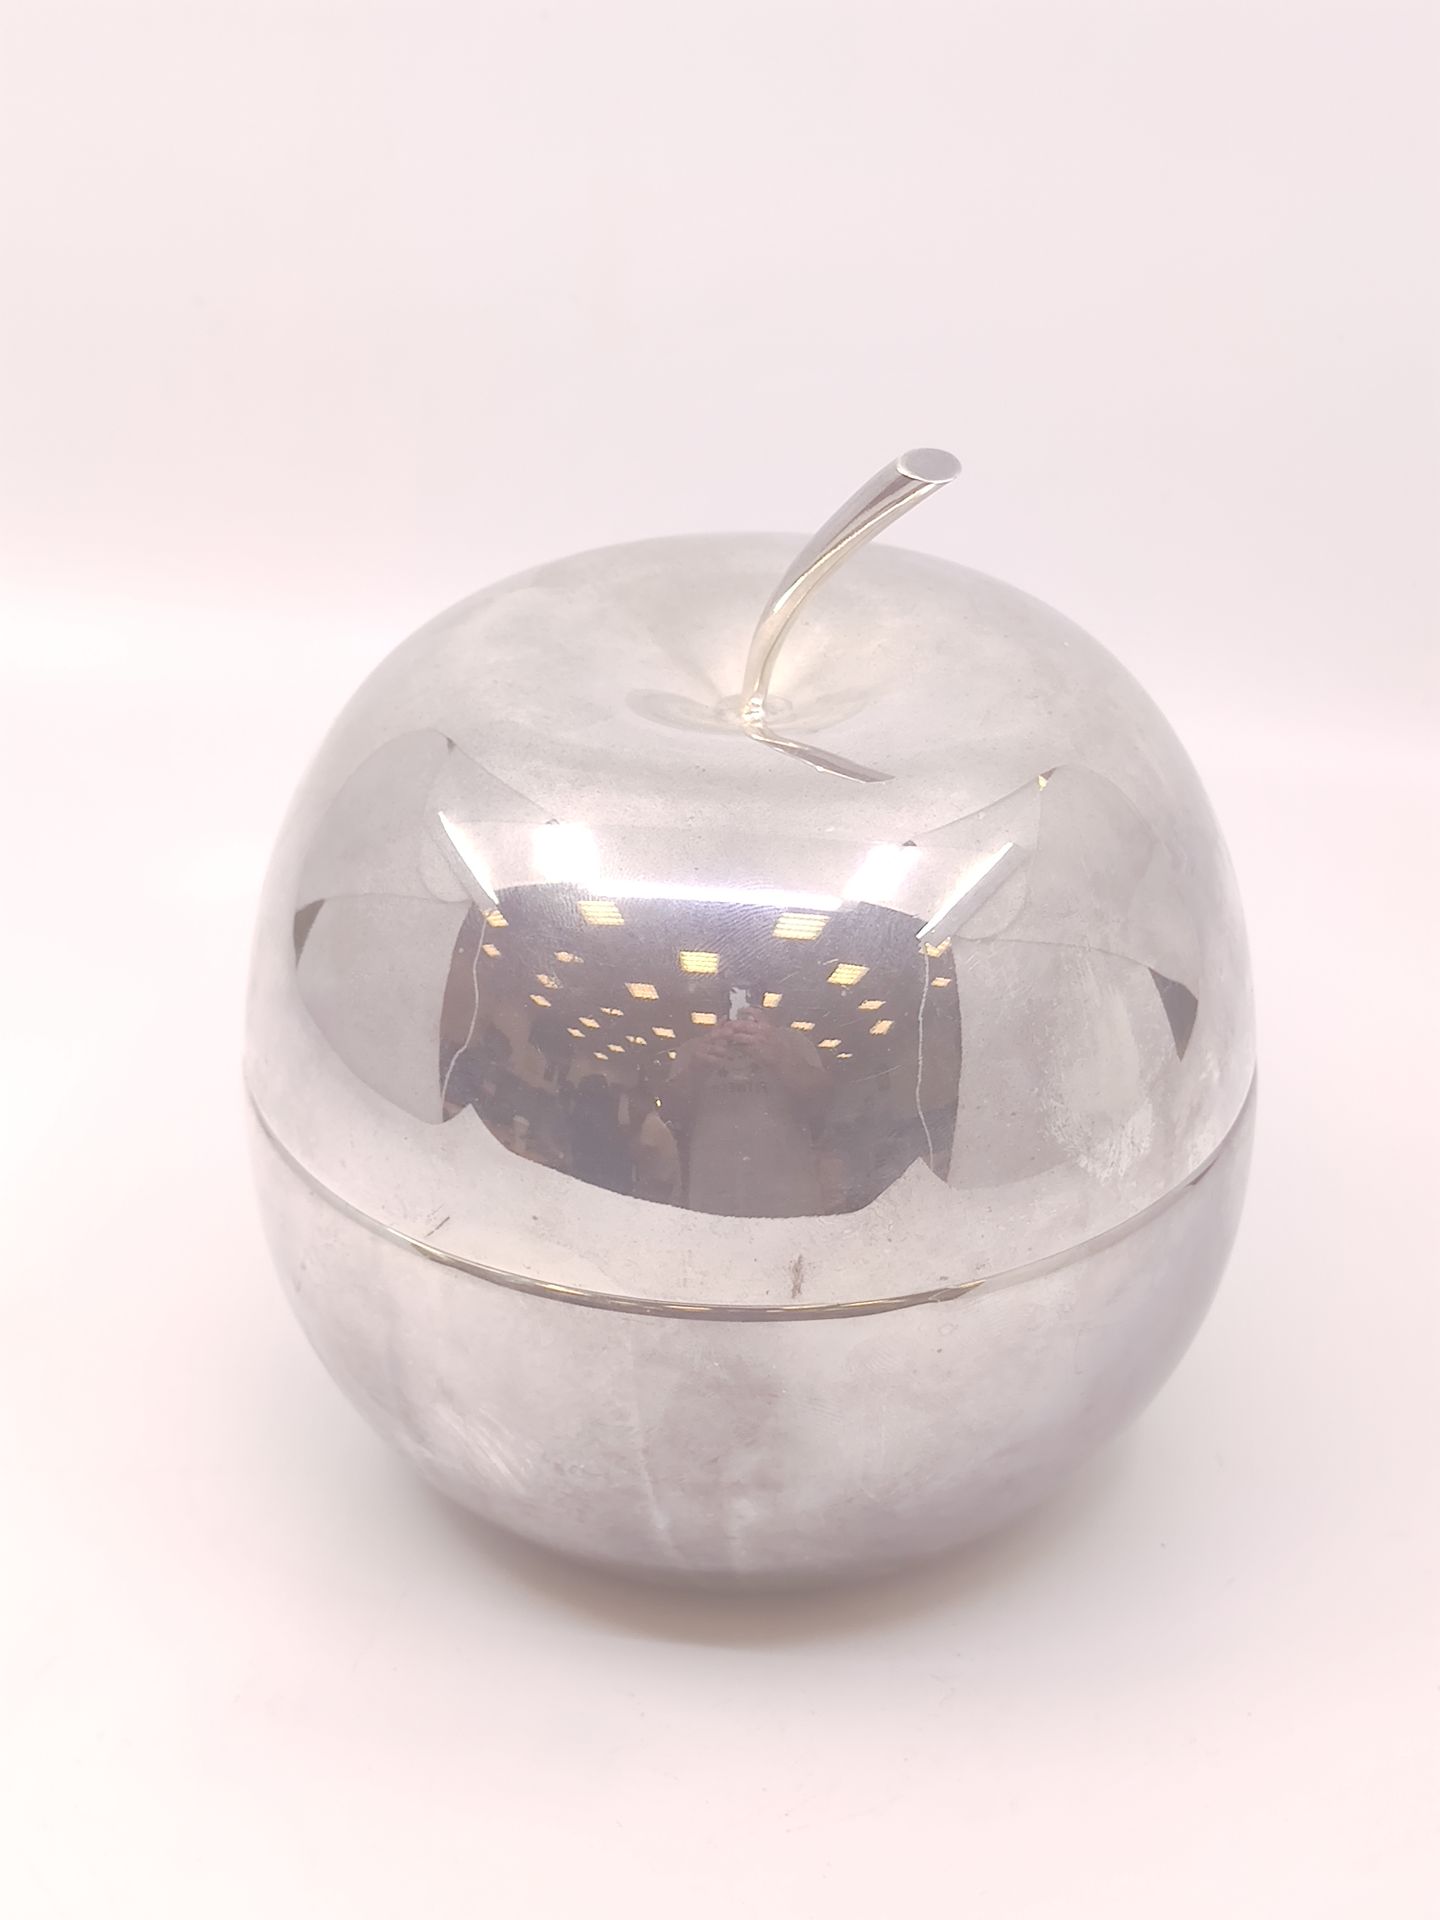 Null 
CHRISTOFLE FLEURON




Seau a glace en métal argenté en forme de pomme



&hellip;